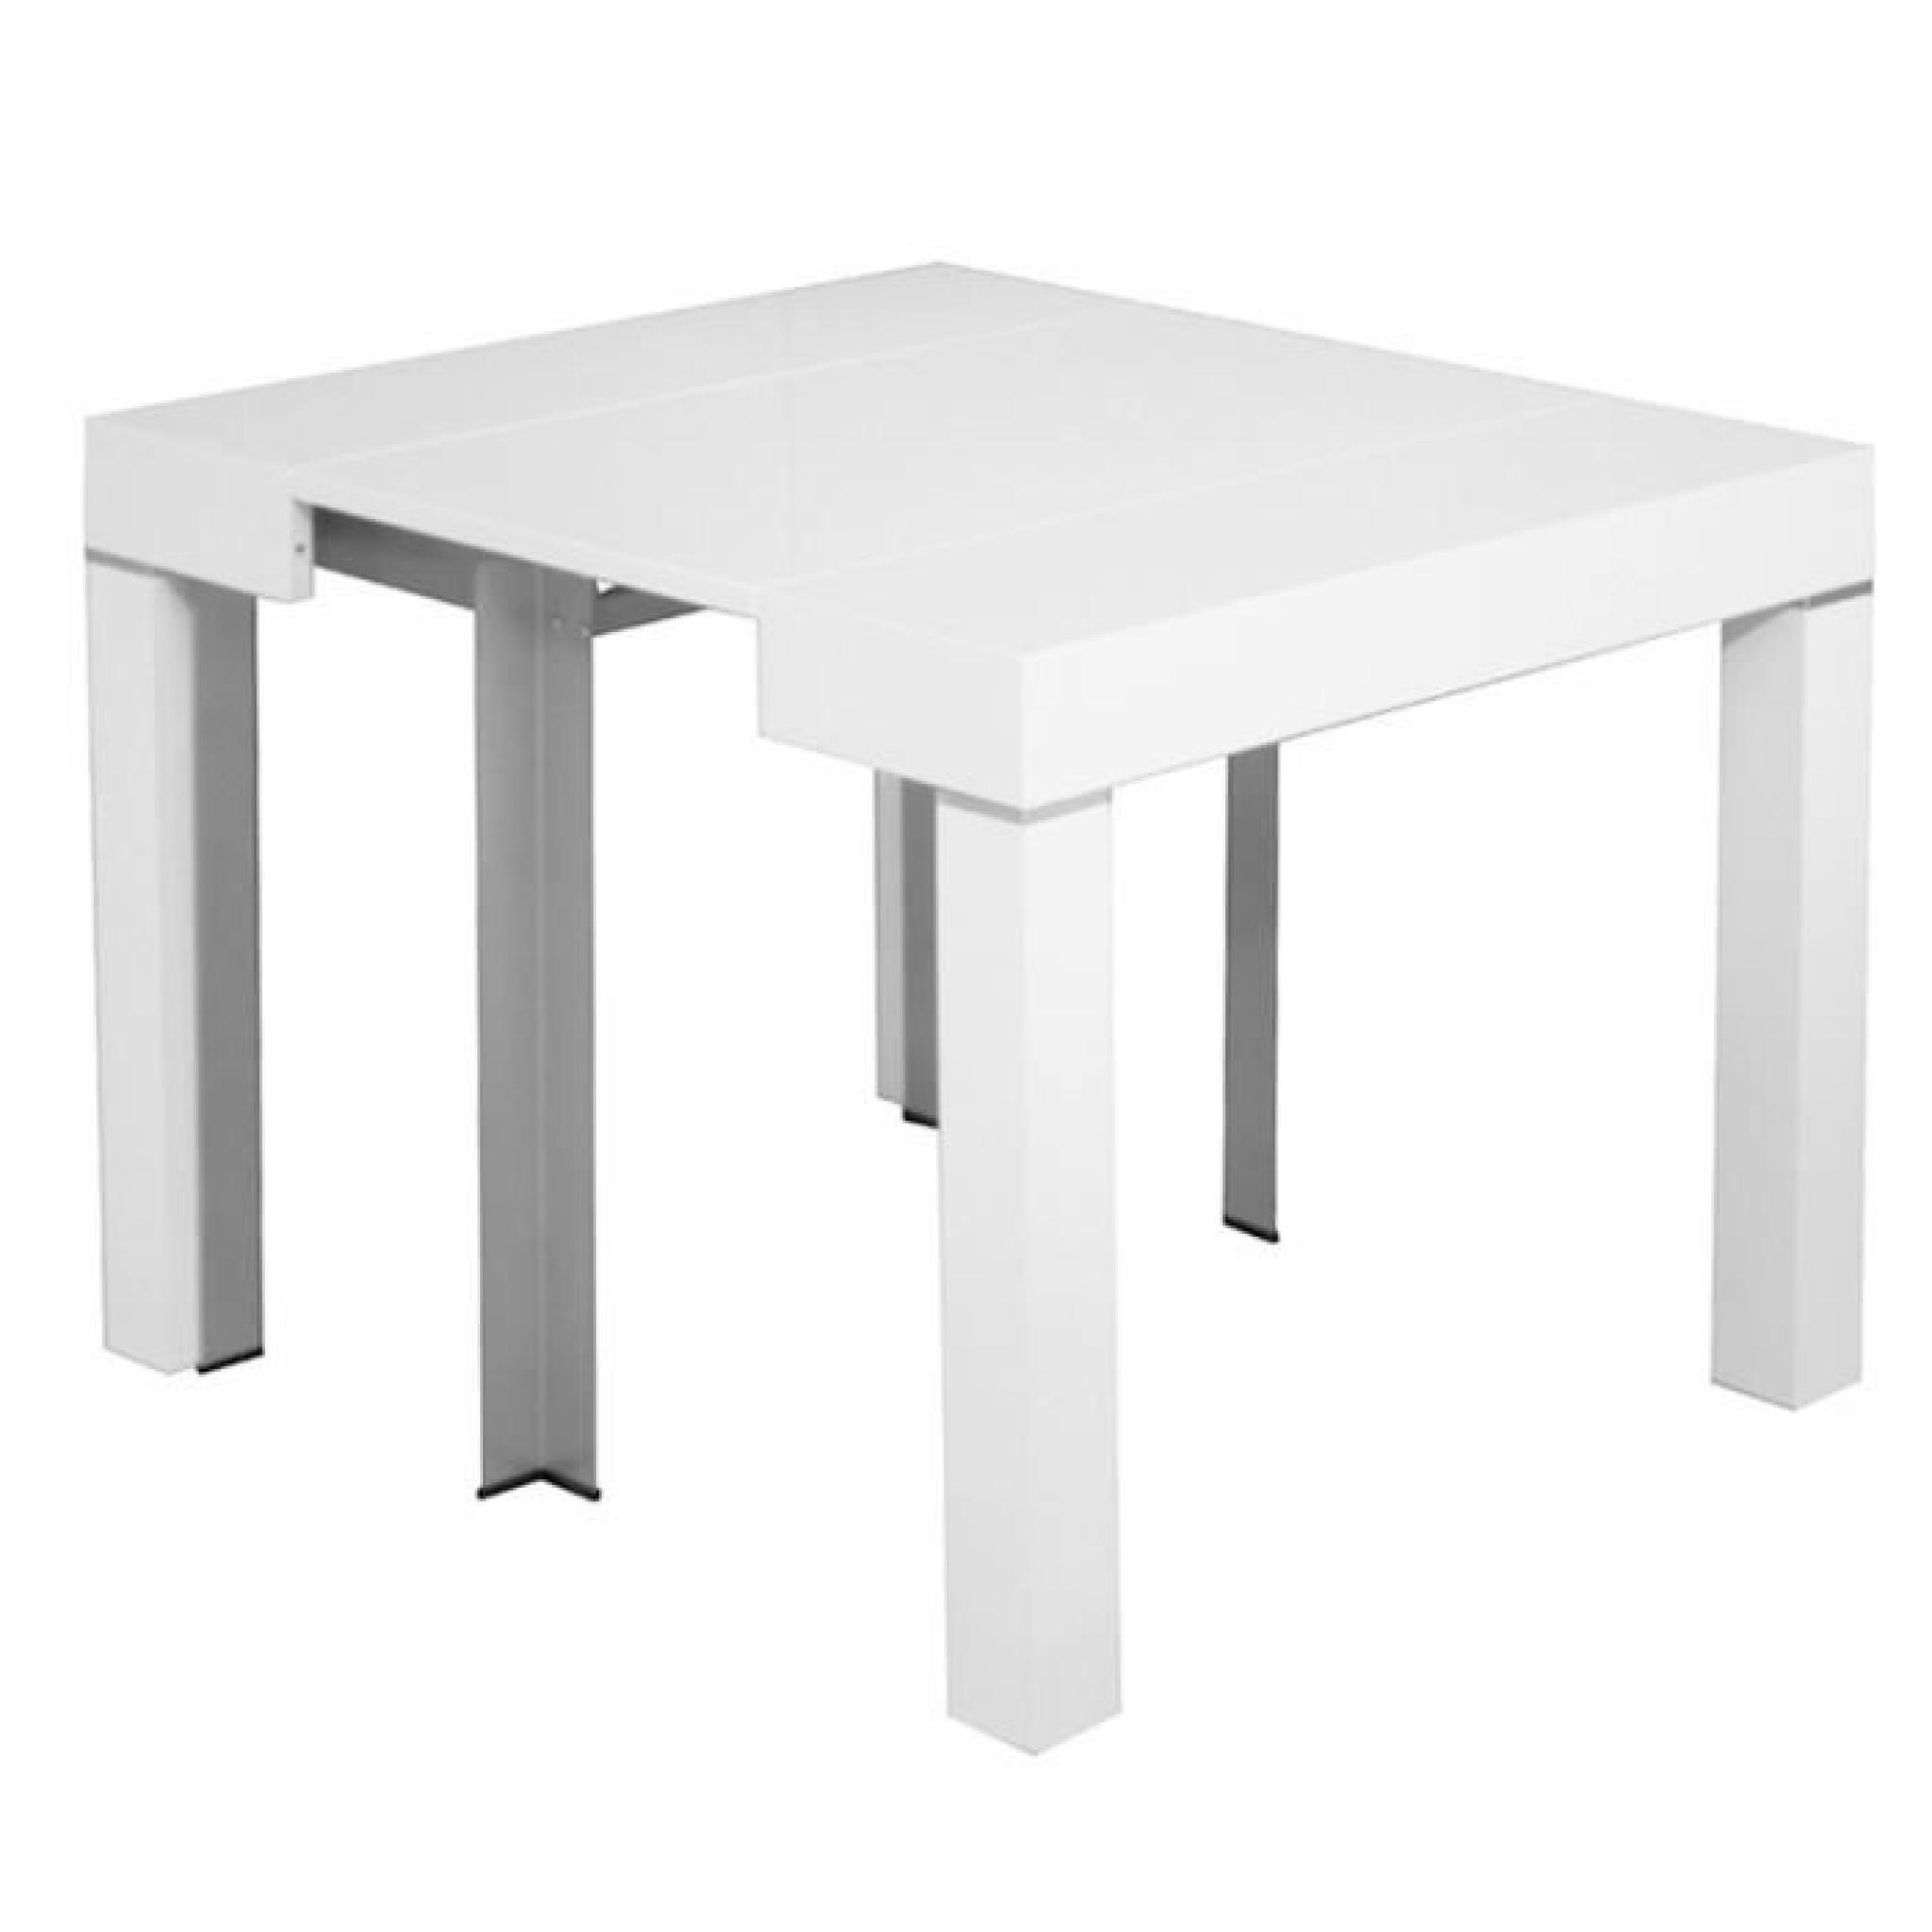 Table console laquée blanc extensible 10 personnes pas cher